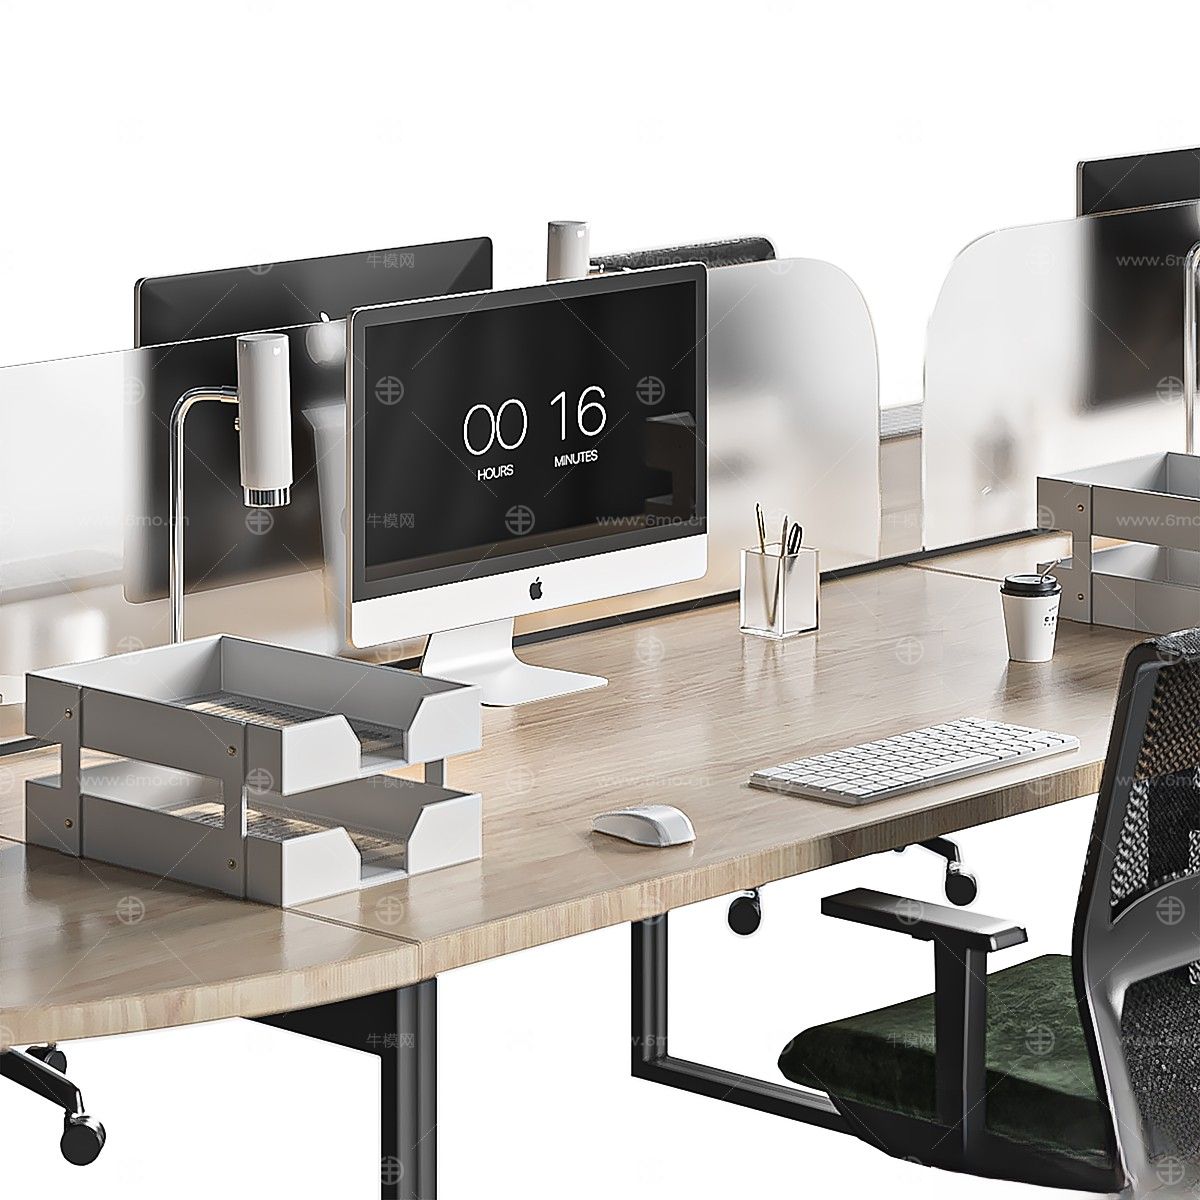 现代办公桌,办公椅,会议桌